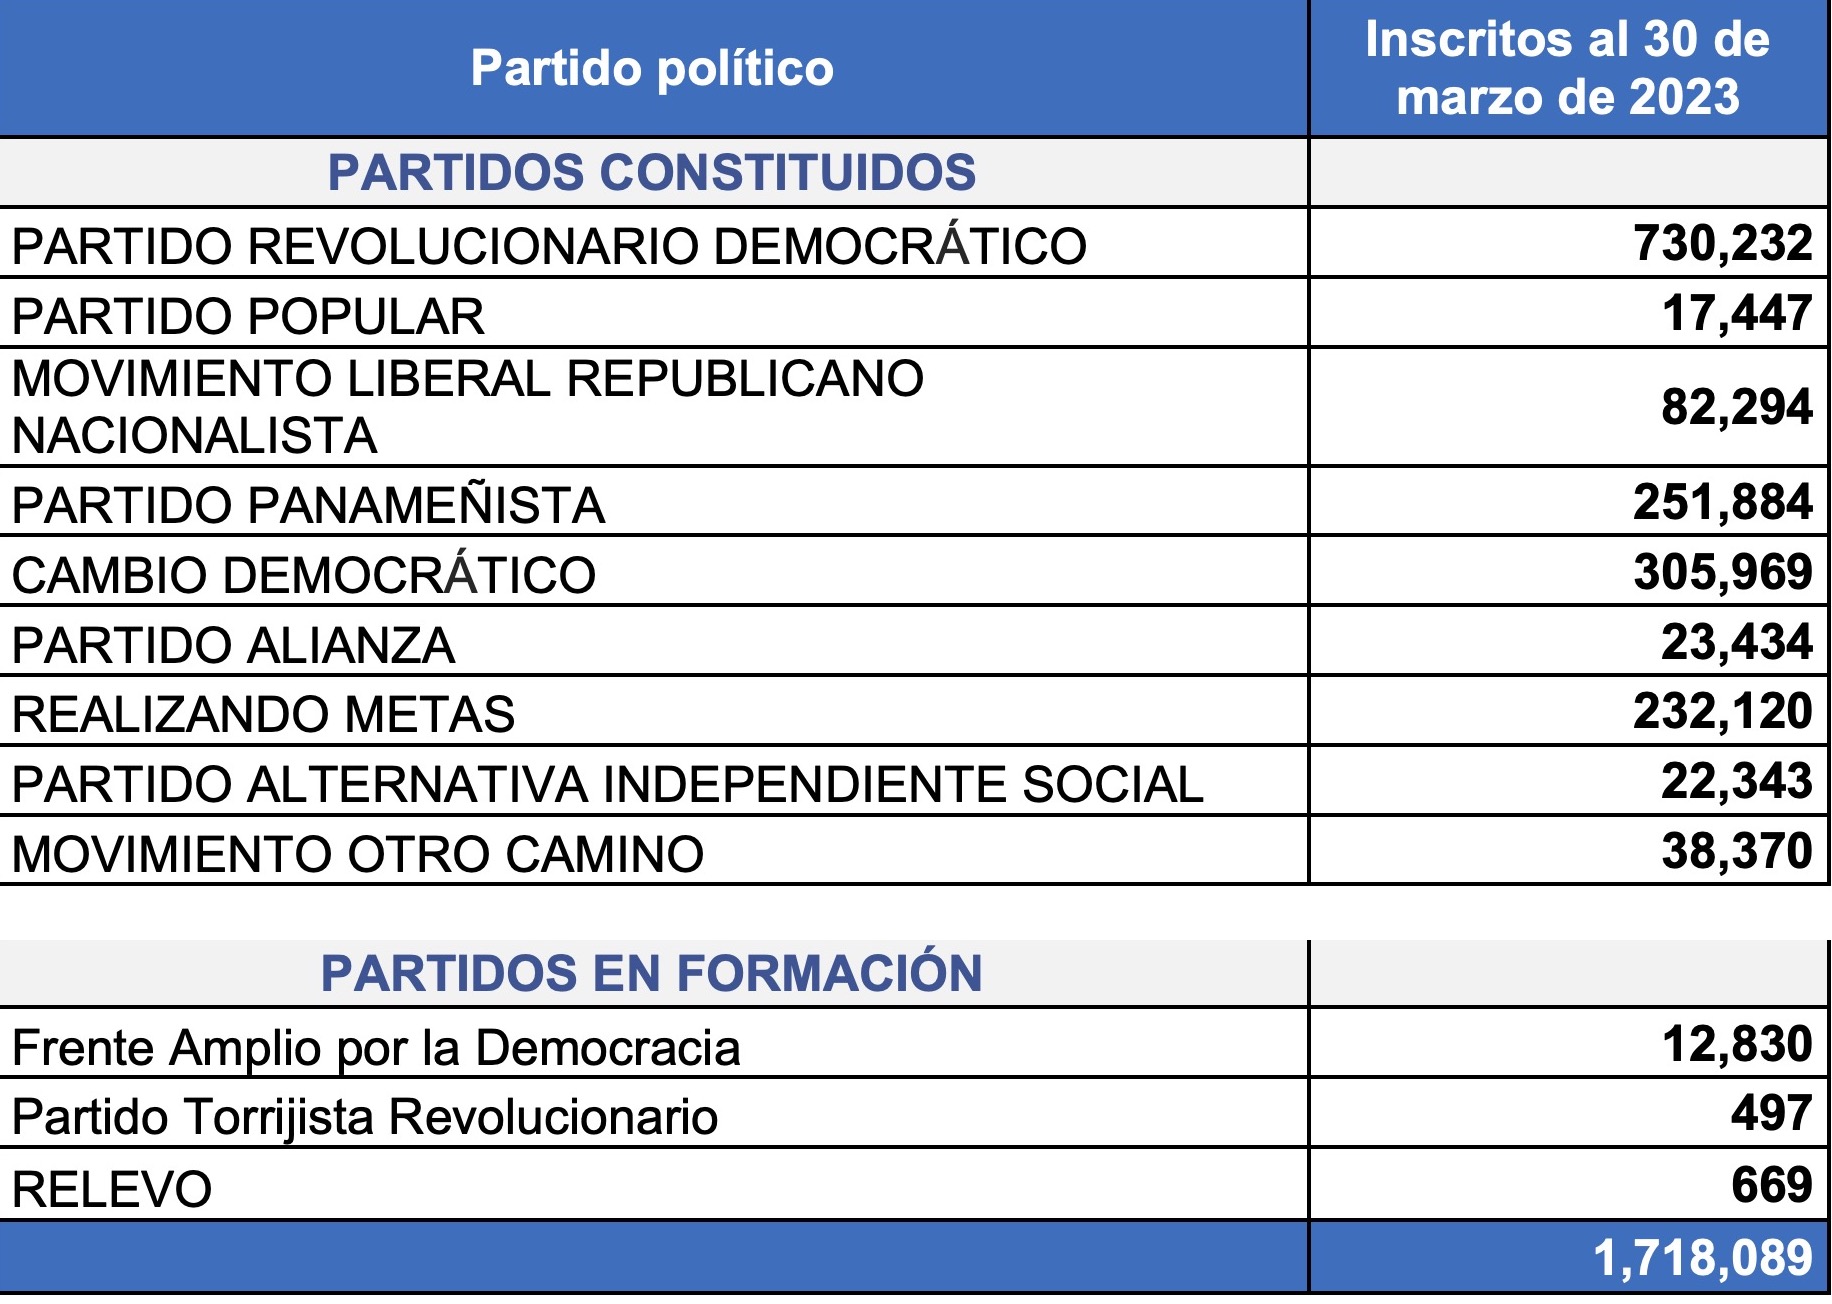 Un total de 1,718,089 panameños afiliados en partidos políticos constituidos y en formación